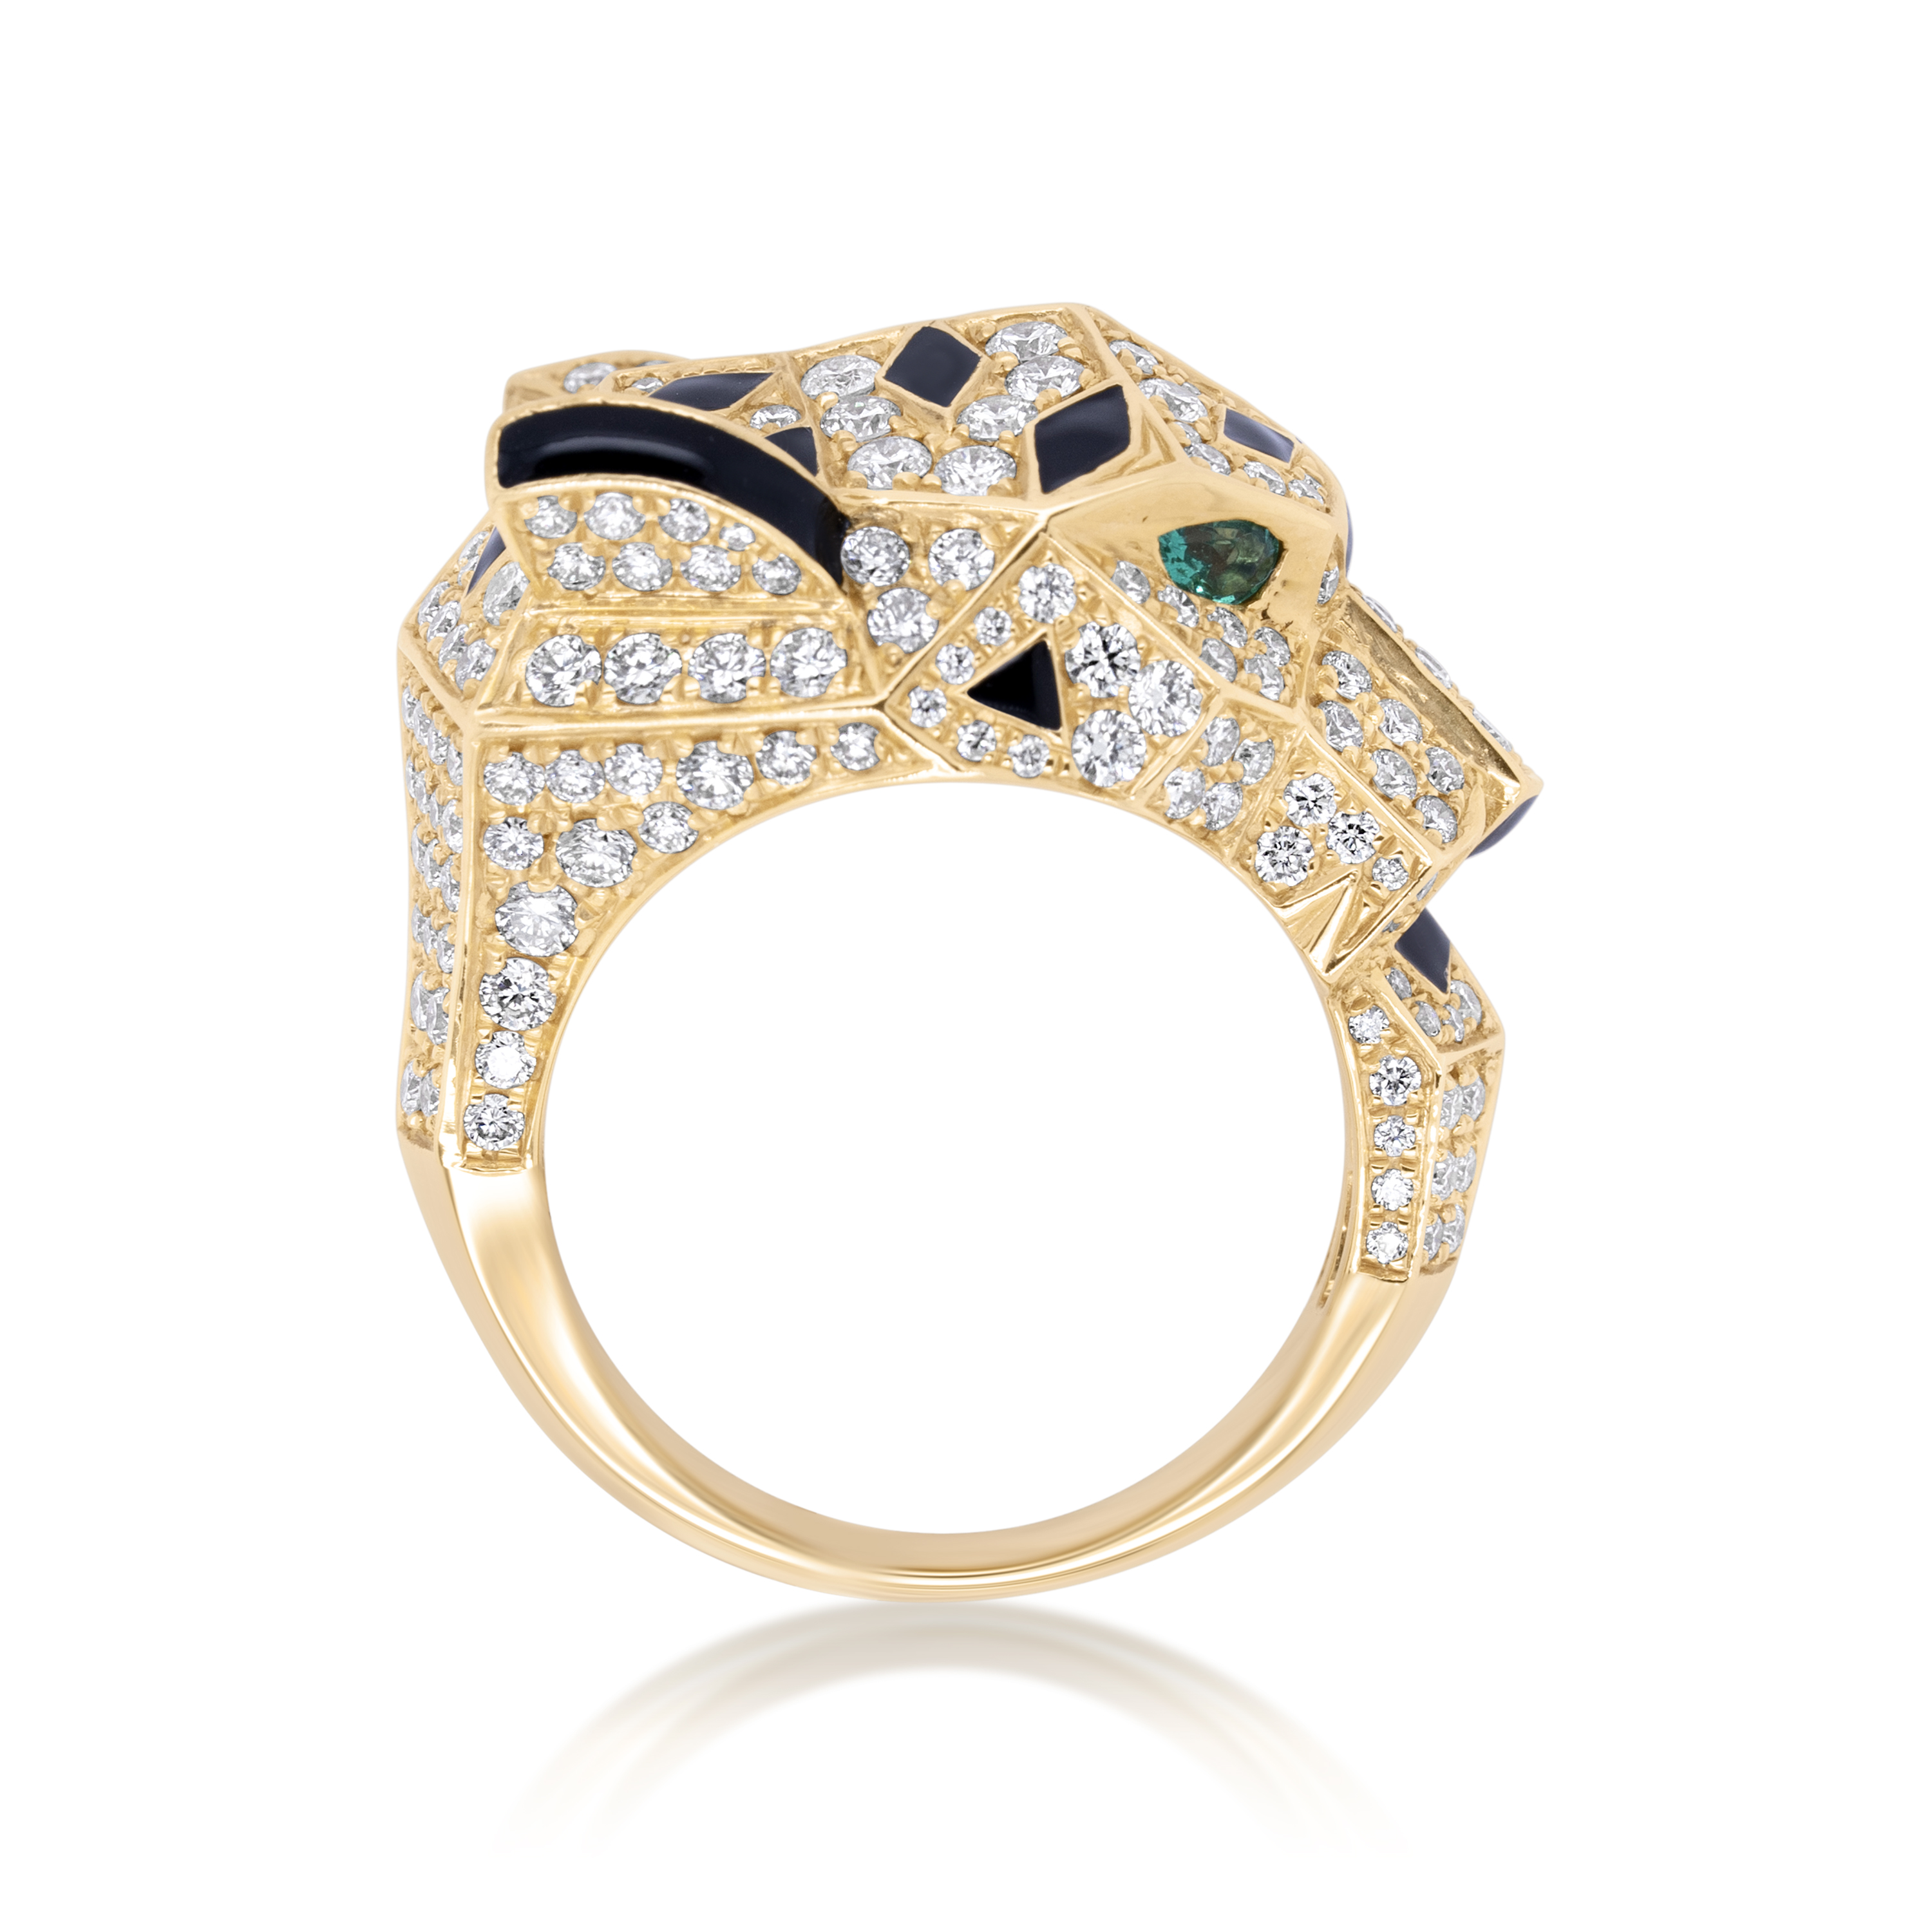 Diamond Cheetah Ring 4.00 ct. 14K Yellow Gold